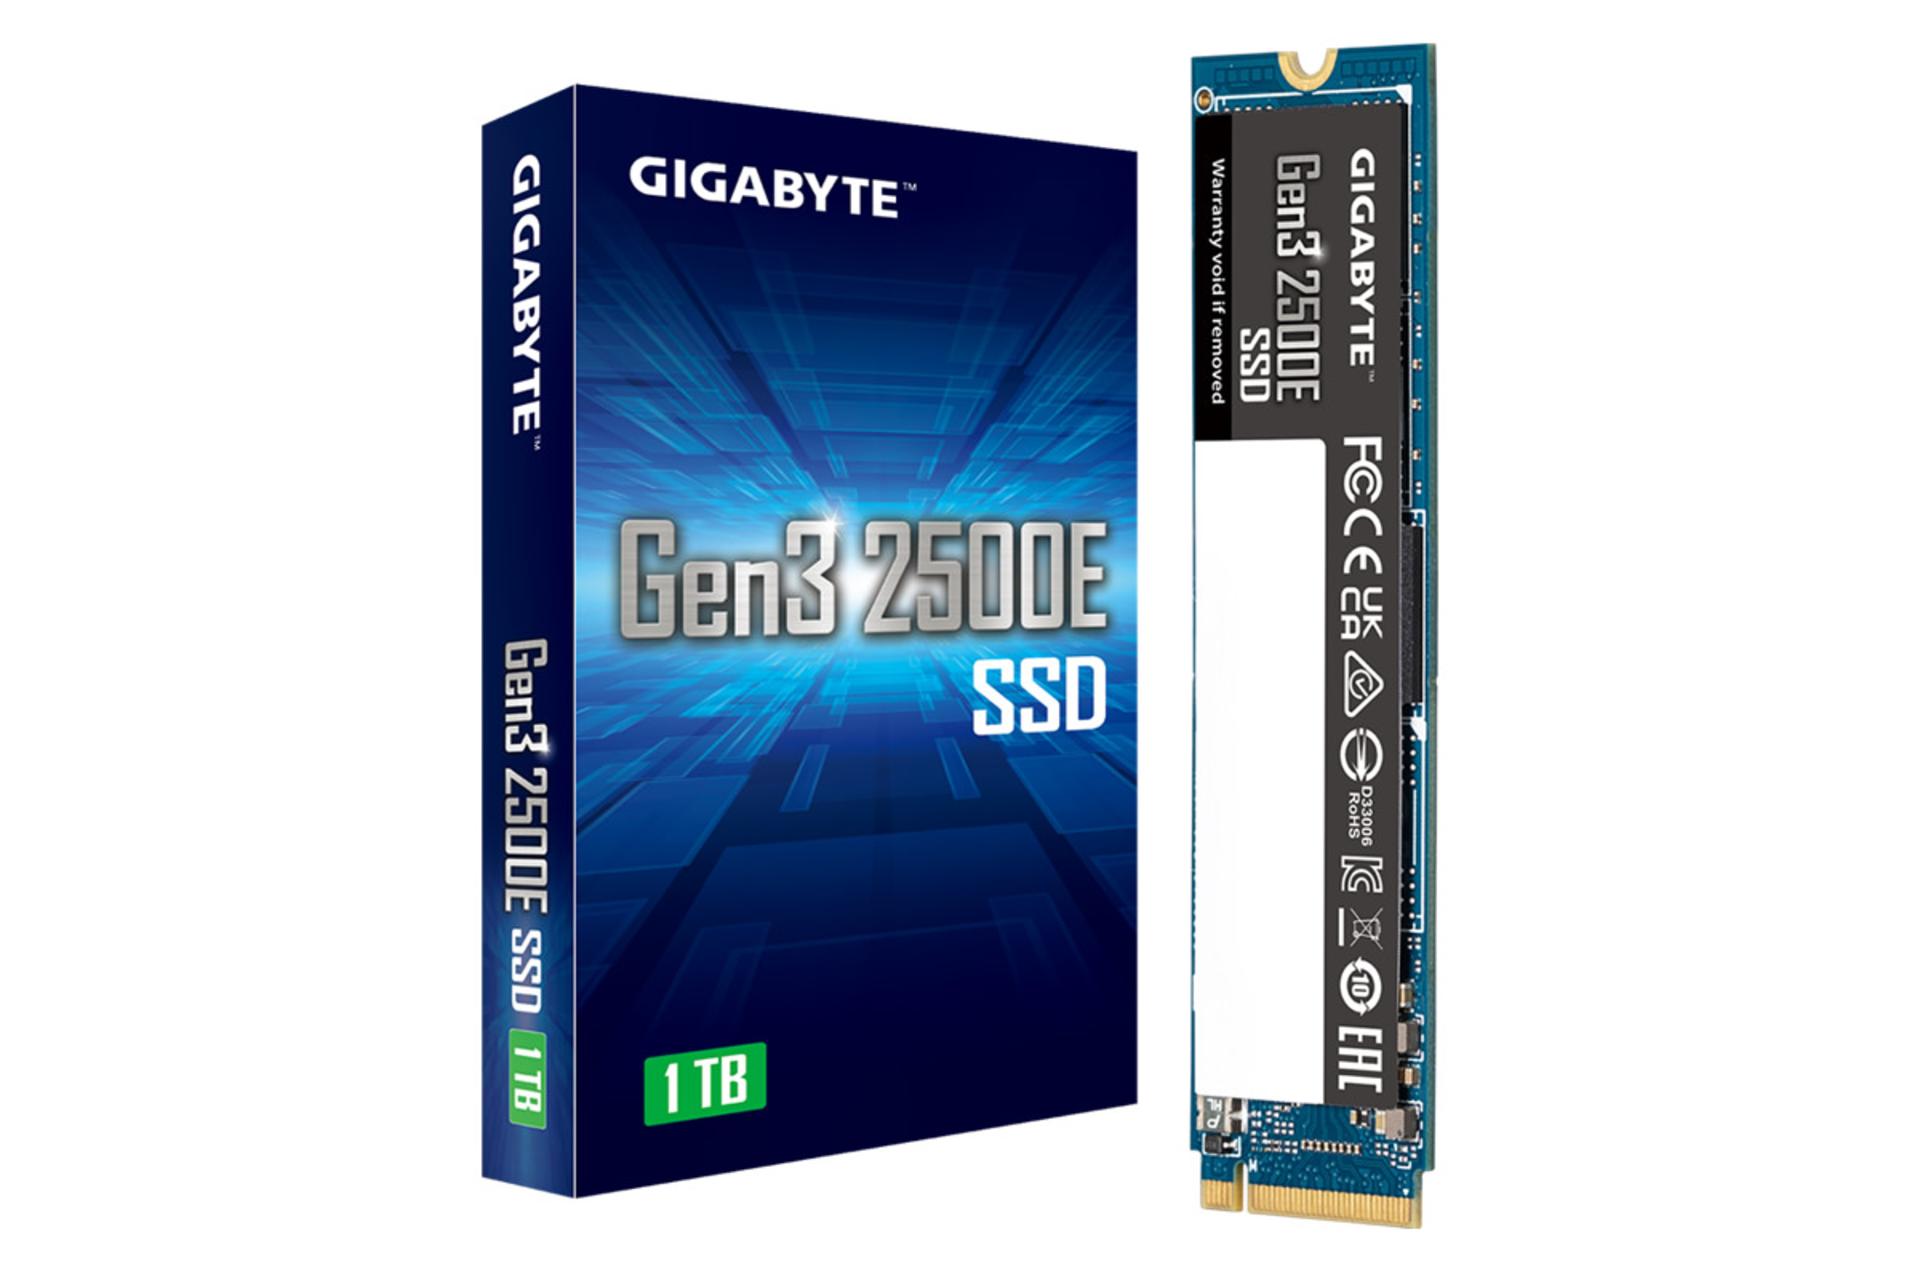 جعبه SSD گیگابایت Gen3 2500E NVMe M.2 ظرفیت 1 ترابایت